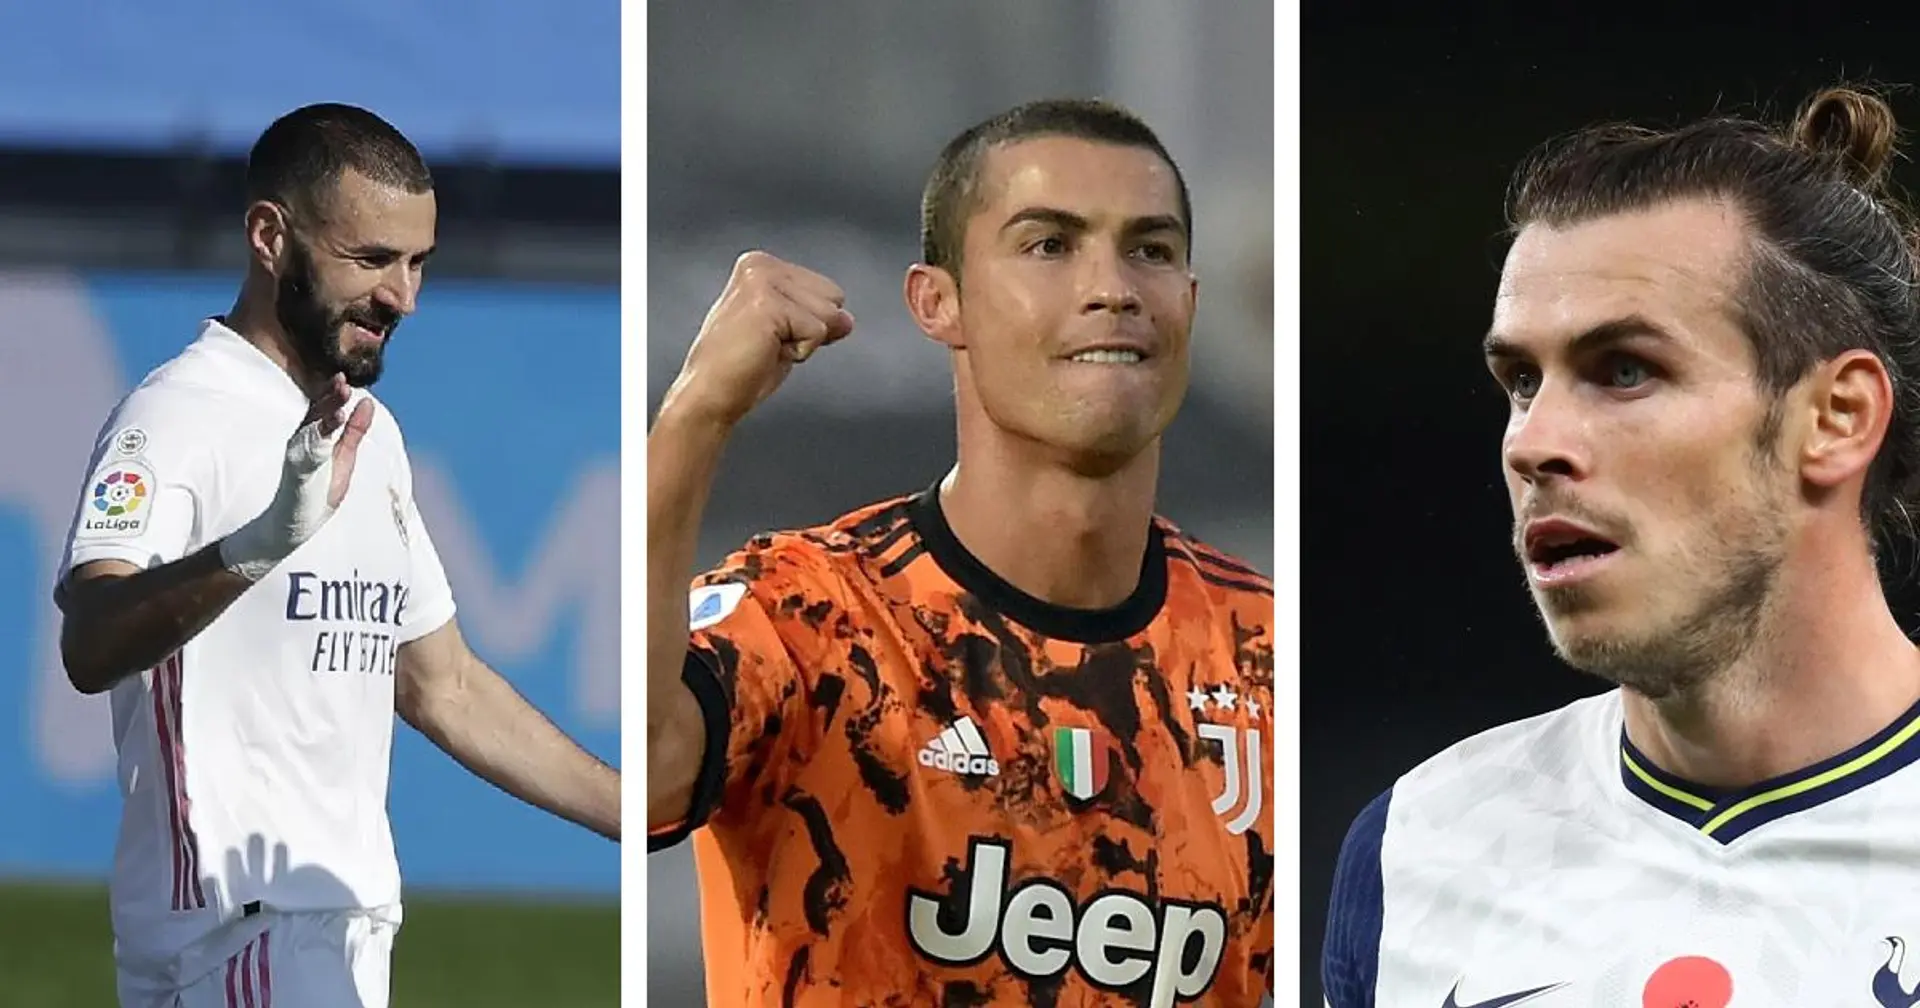 La BBC se reactiva: Bale, Benzema y Ronaldo anotaron 5 goles en el fin de semana